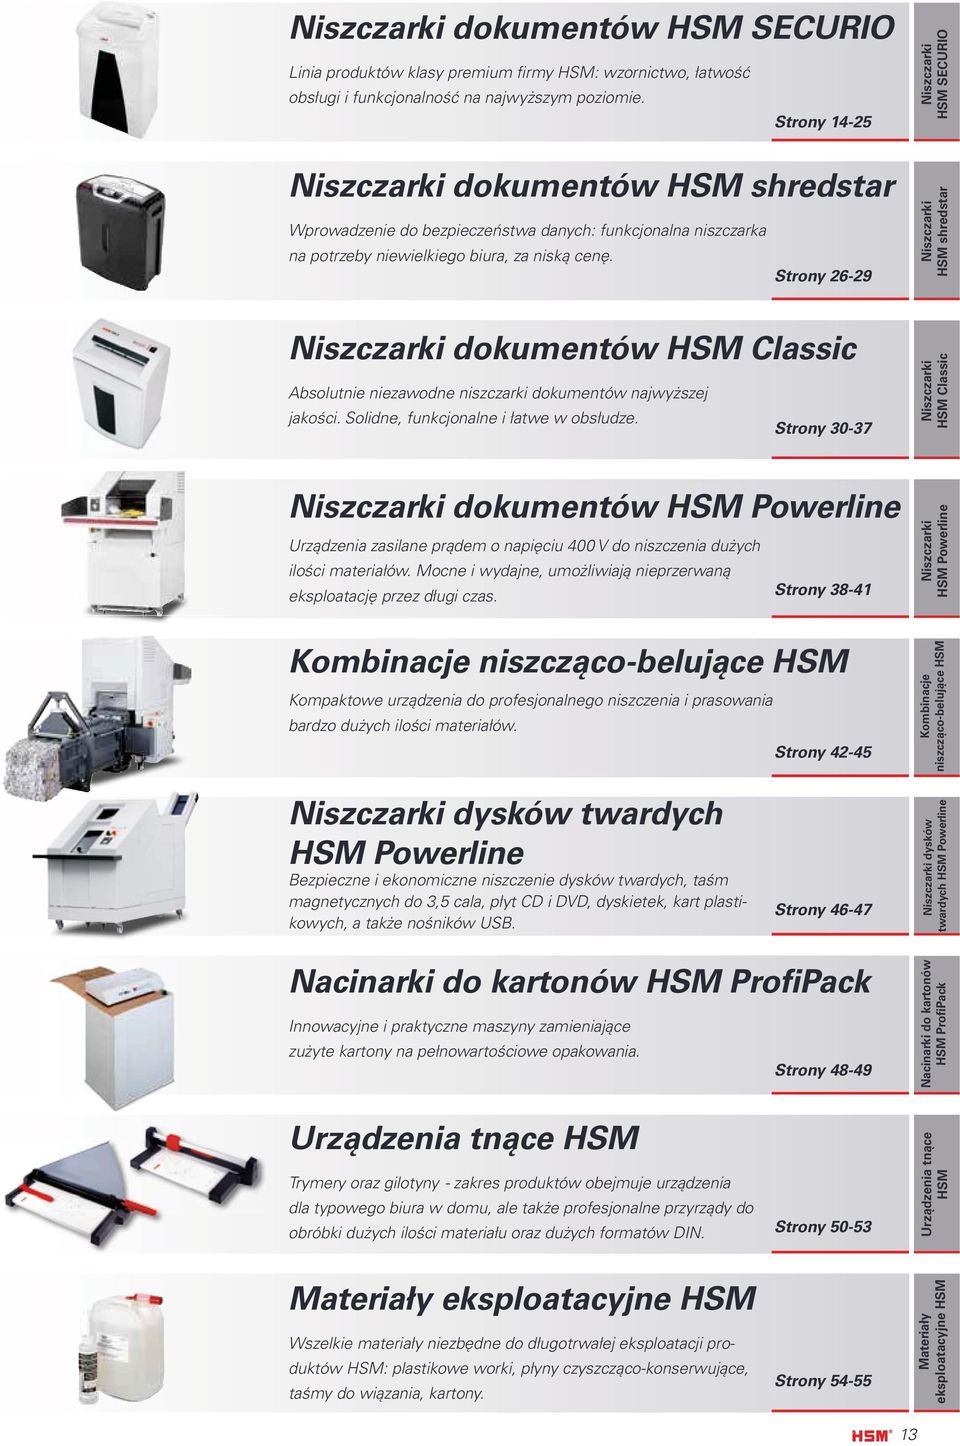 Strony 26-29 HSM shredstar dokumentów HSM Classic Absolutnie niezawodne niszczarki dokumentów najwyższej jakości. Solidne, funkcjonalne i łatwe w obsłudze.